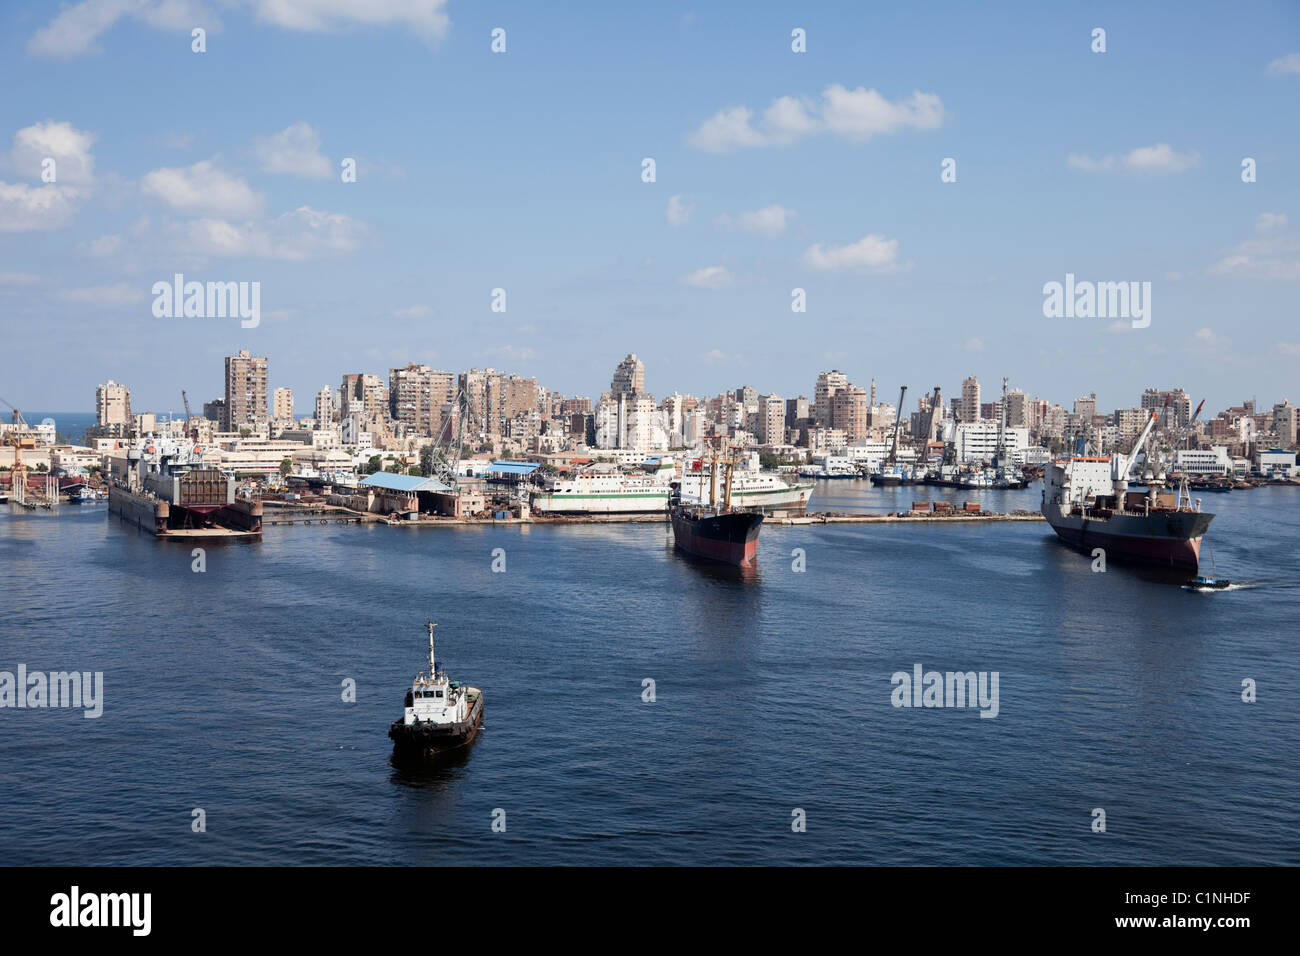 Donnant sur la vue de l'intérieur du port d'Alexandrie et la ville. Banque D'Images